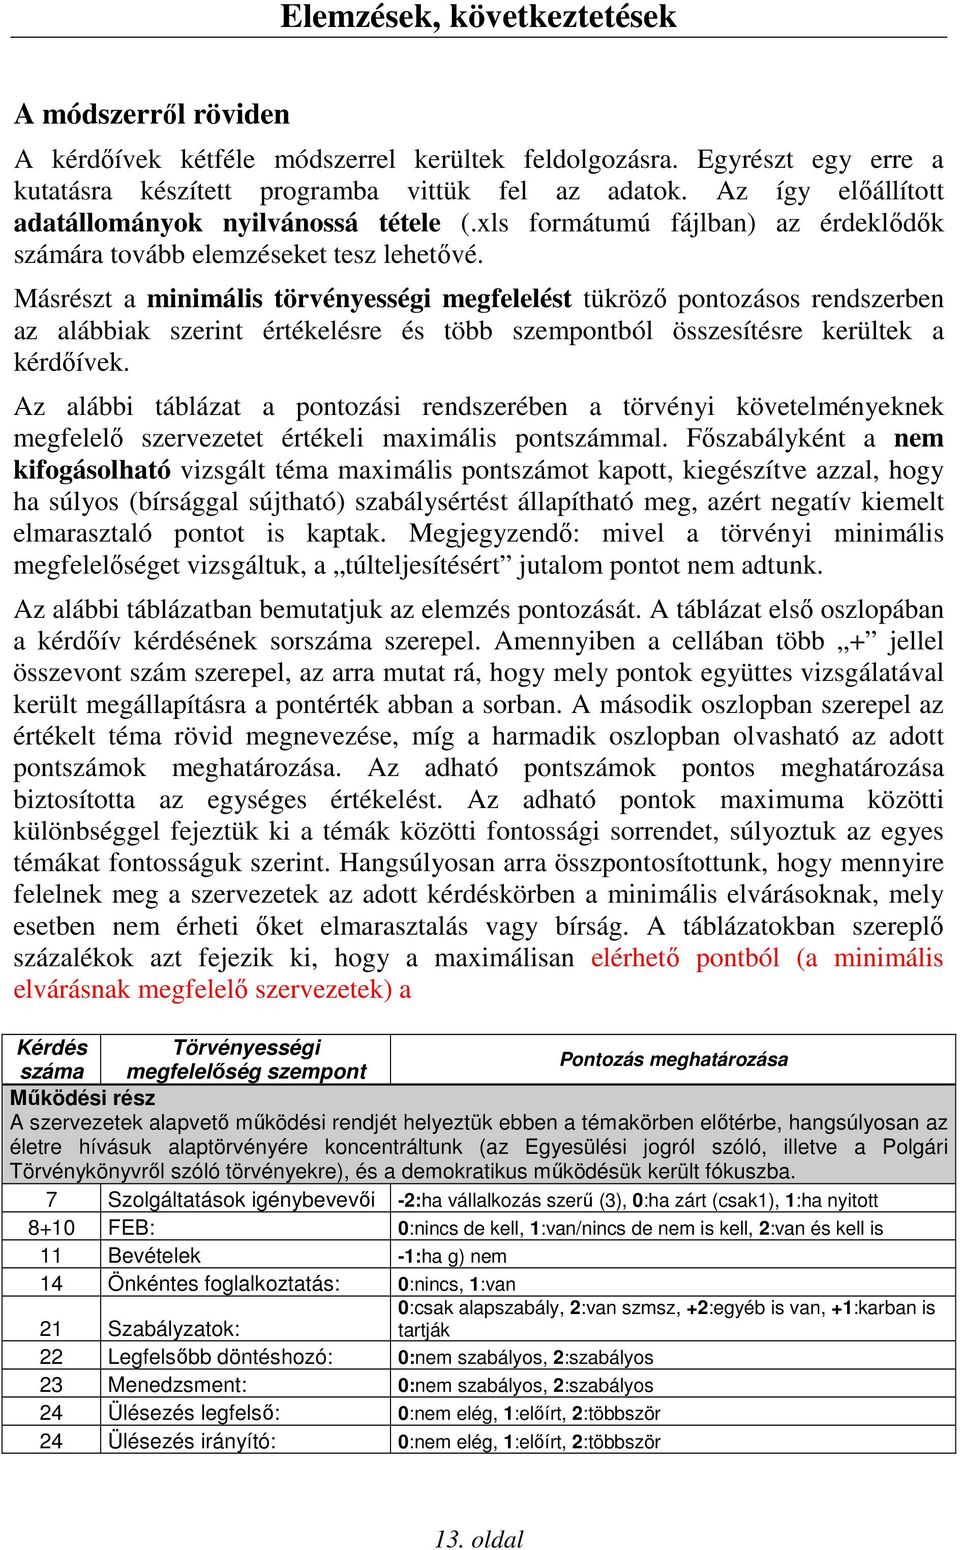 Másrészt a minimális törvényességi megfelelést tükrözı pontozásos rendszerben az alábbiak szerint értékelésre és több szempontból összesítésre kerültek a kérdıívek.